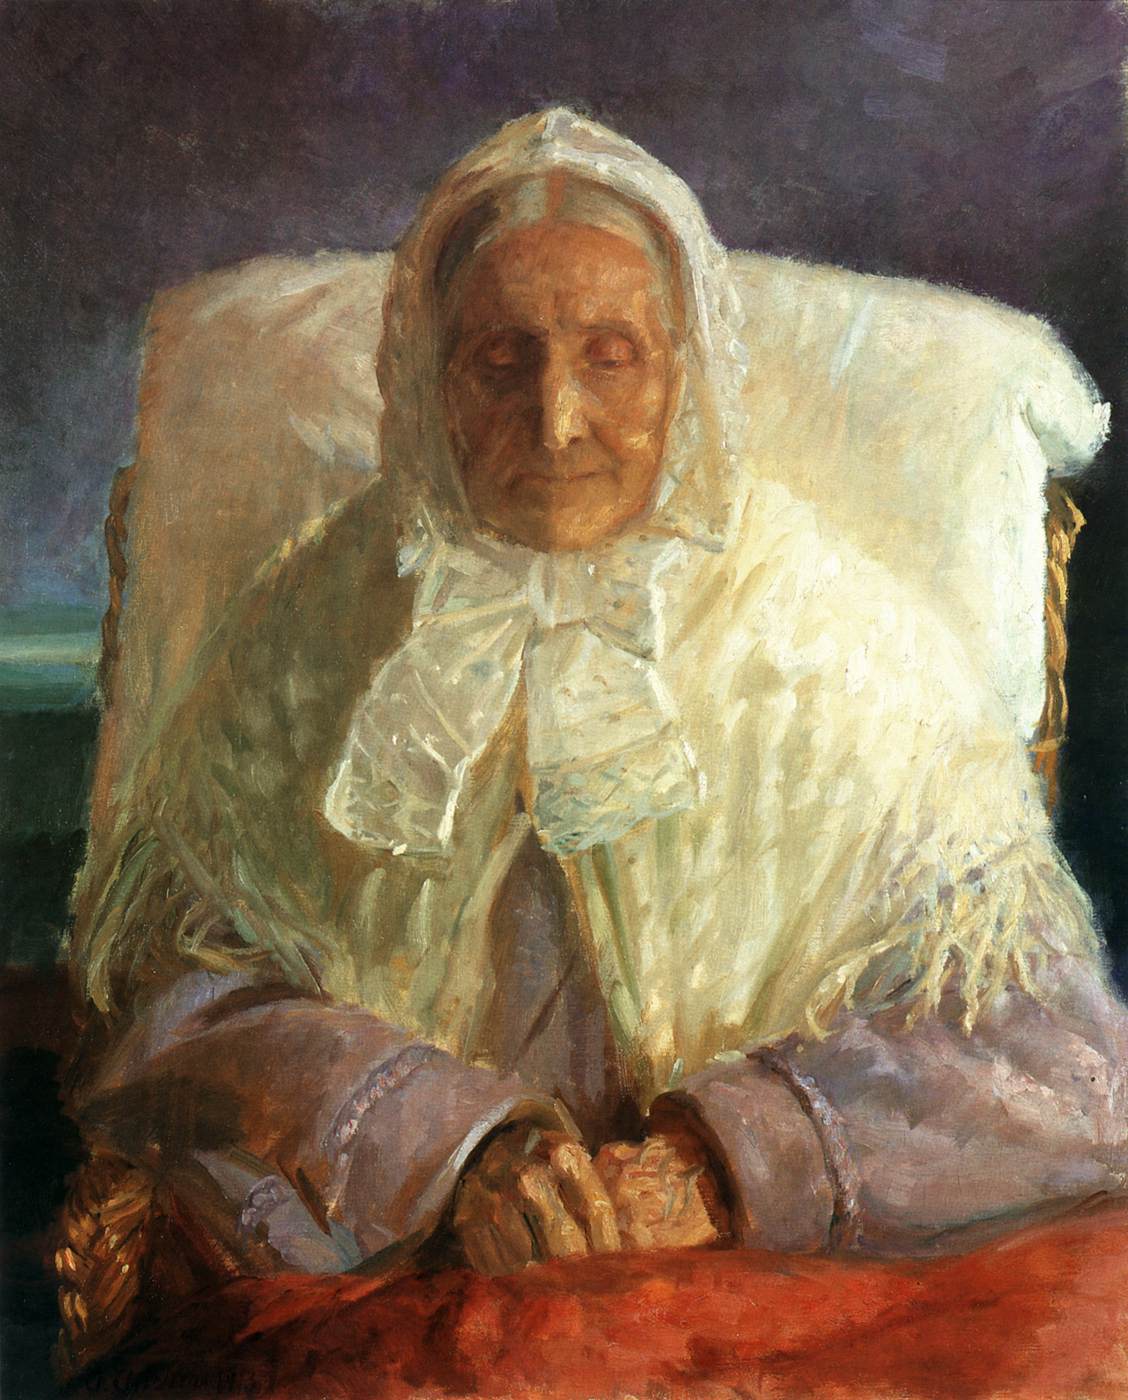 A Mãe do Artista, Ana Hedvig Brøndum